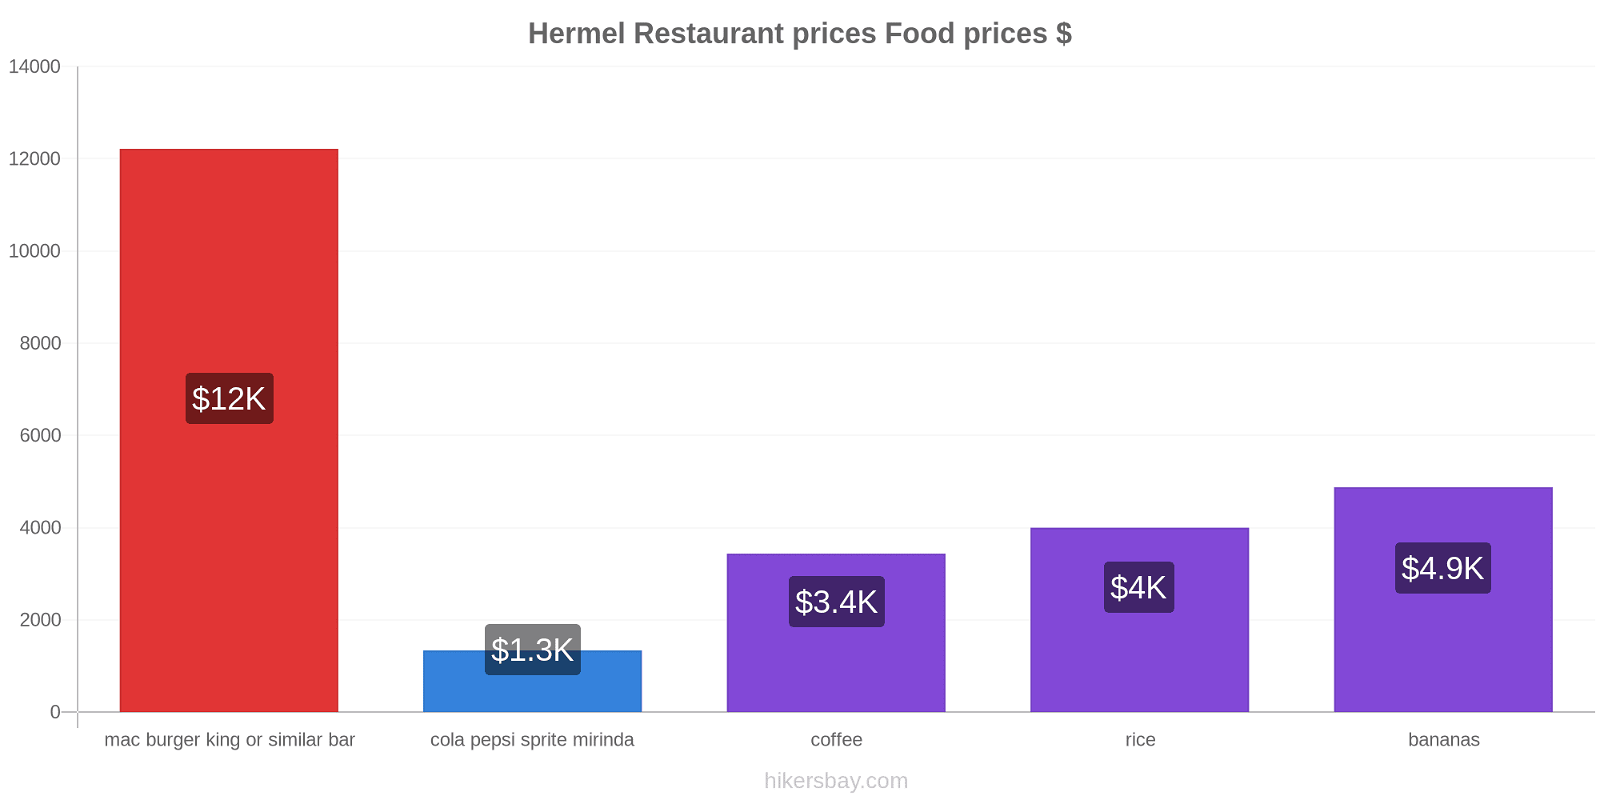 Hermel price changes hikersbay.com